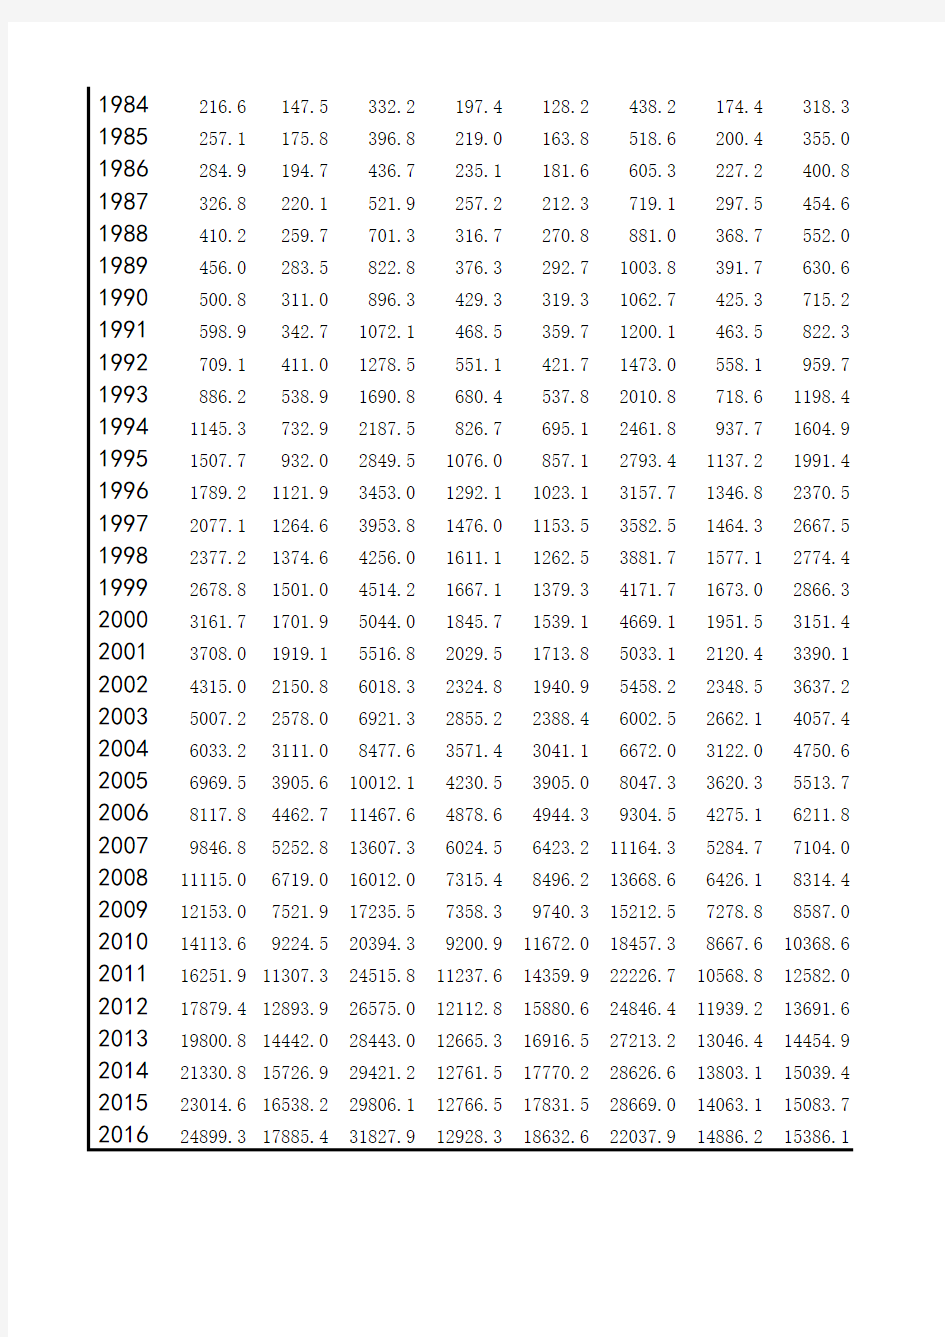 中国各省市历年GDP数据汇总表